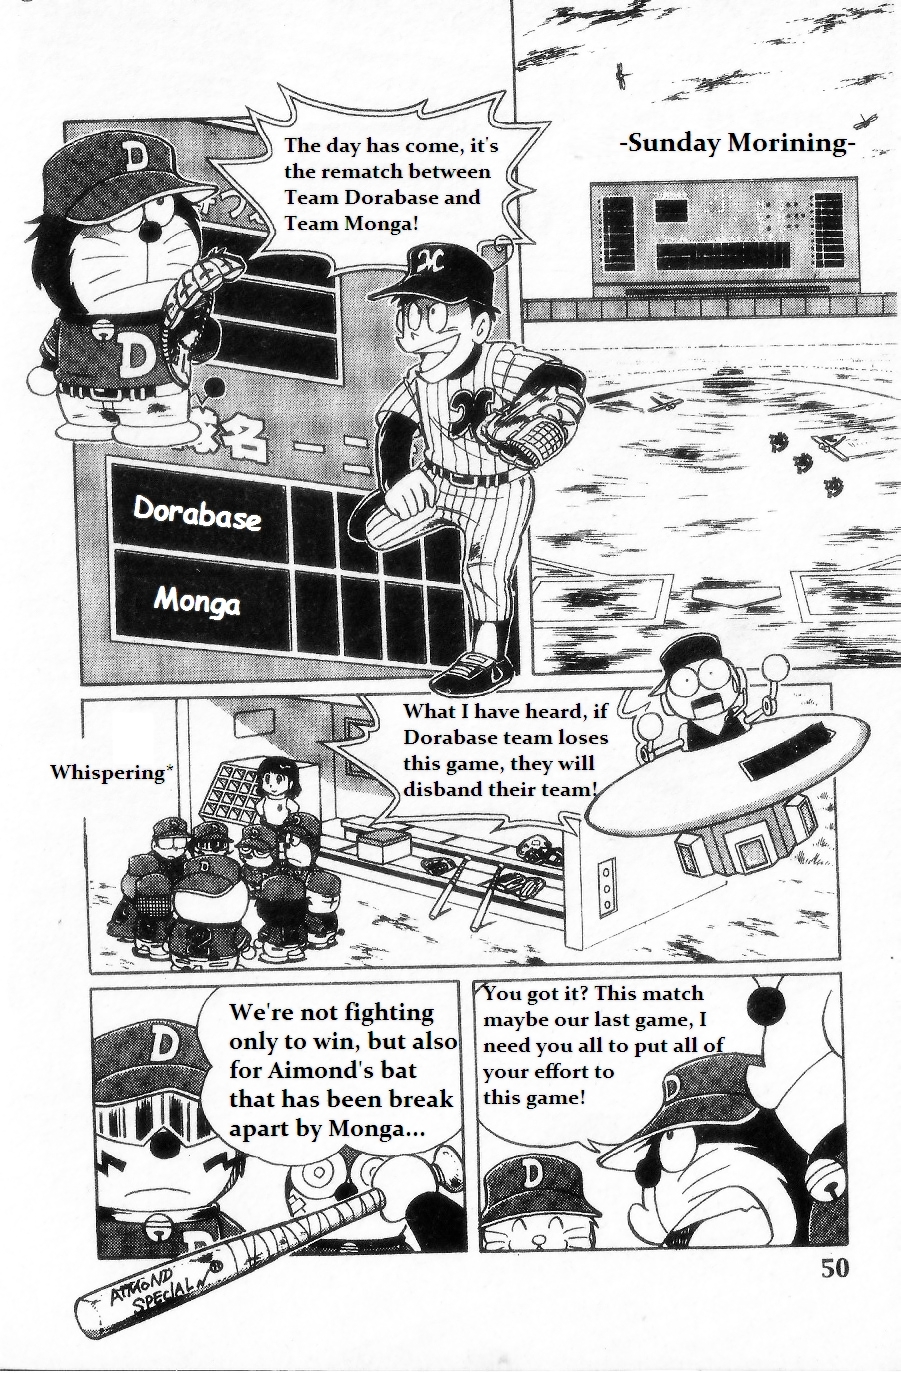 Dorabase Doraemon Chouyakyuu Gaiden Vol. 1 Ch. 3 Never Give Up!!